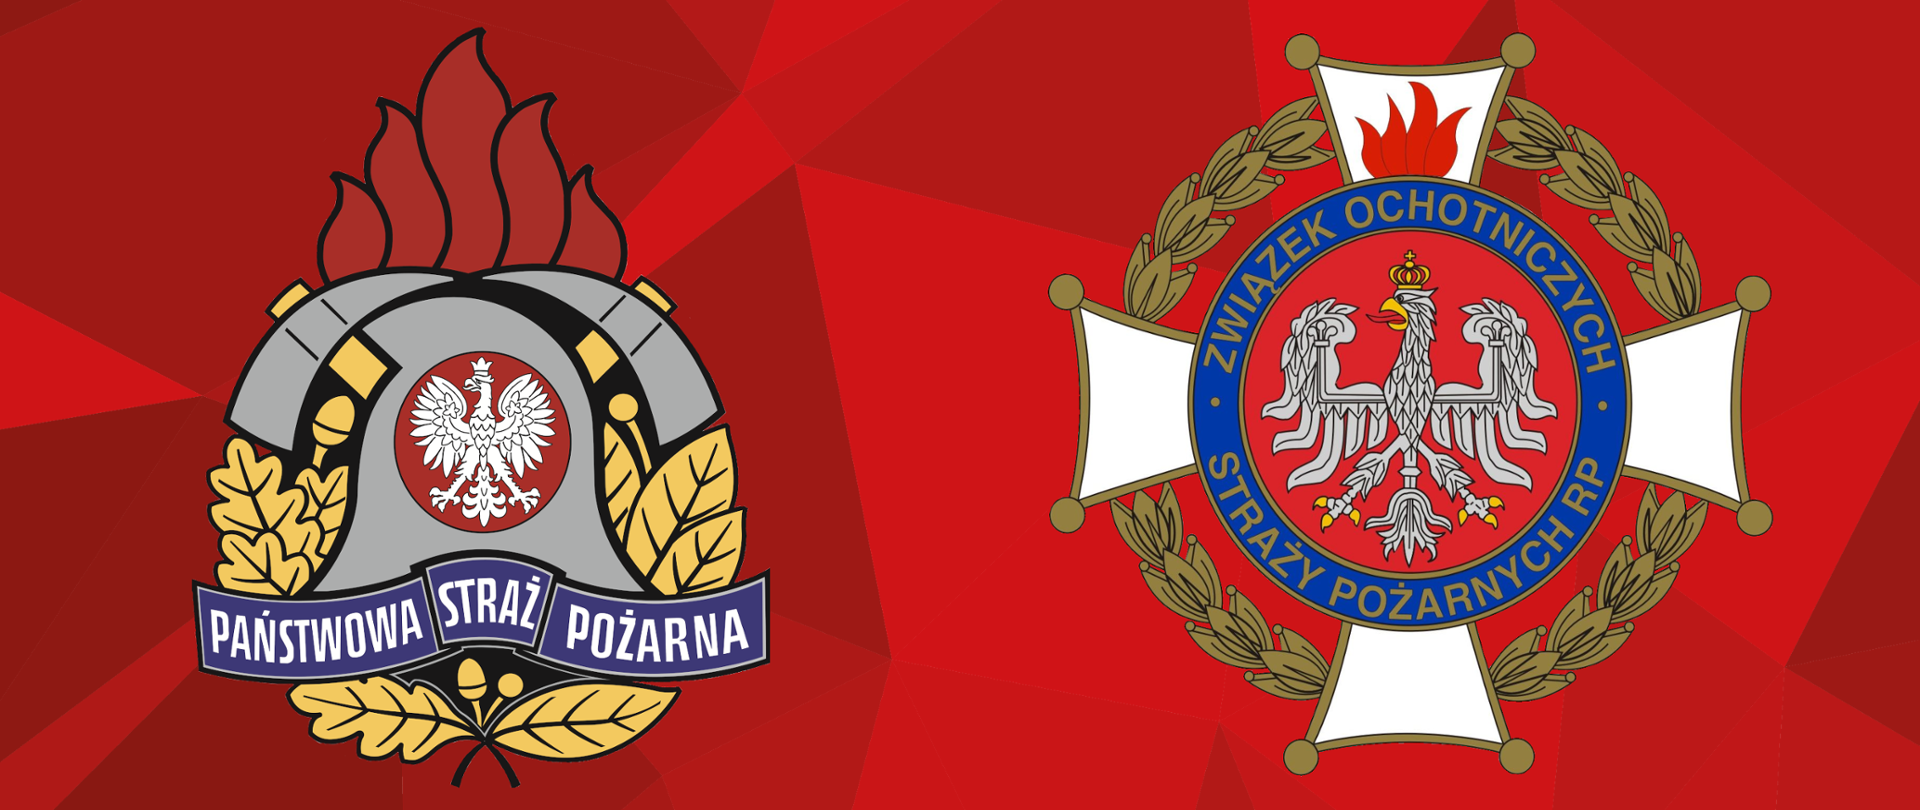 Logotyp Państwowej Straży Pożarnej oraz Związku Ochotniczych Straży Pożarnych na czerwonym tle